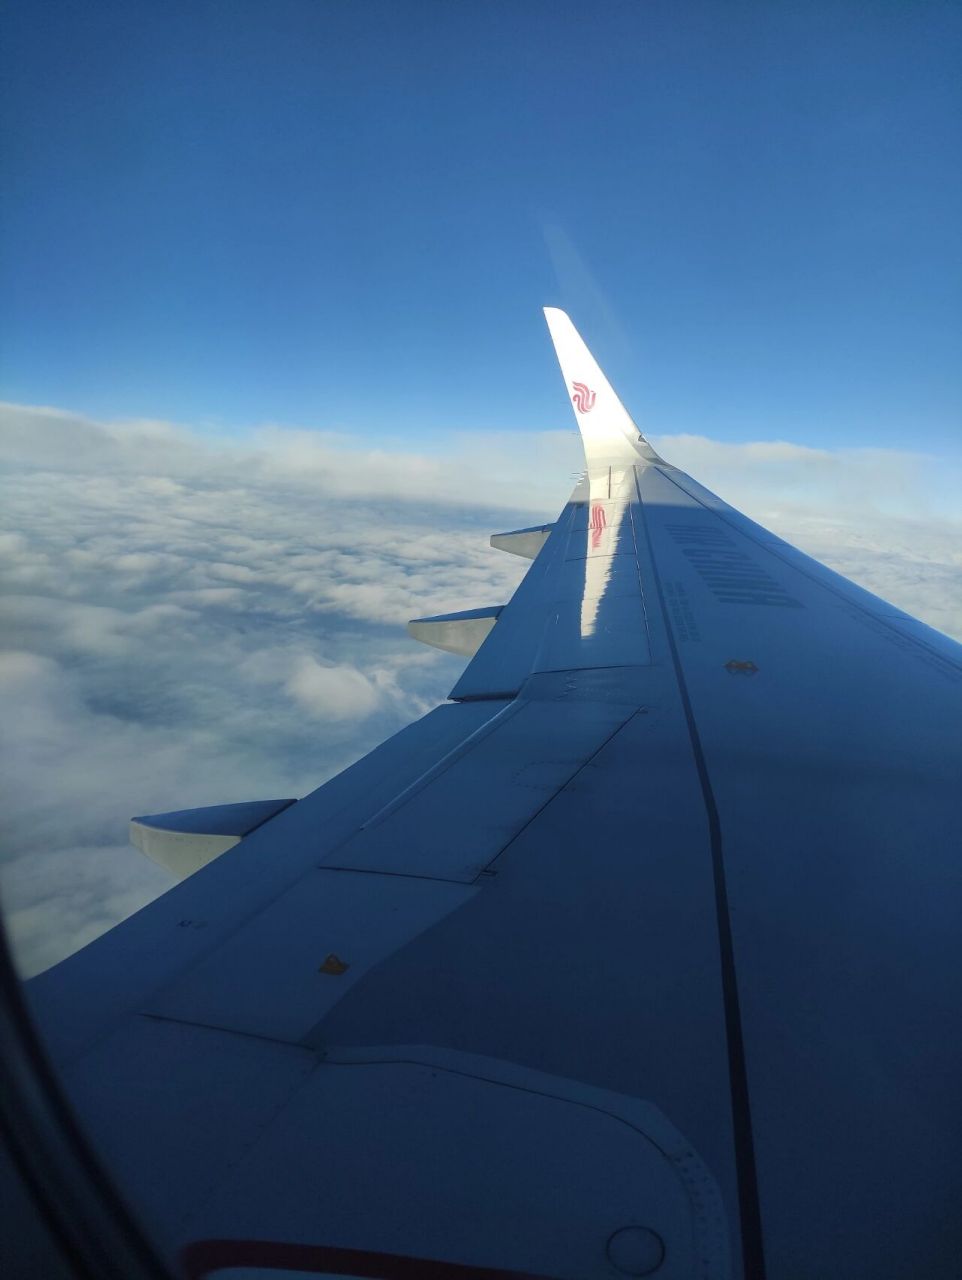 飞机上看风景 飞机上拍照 坐飞机小技巧 上午:从南往北飞的时候可以